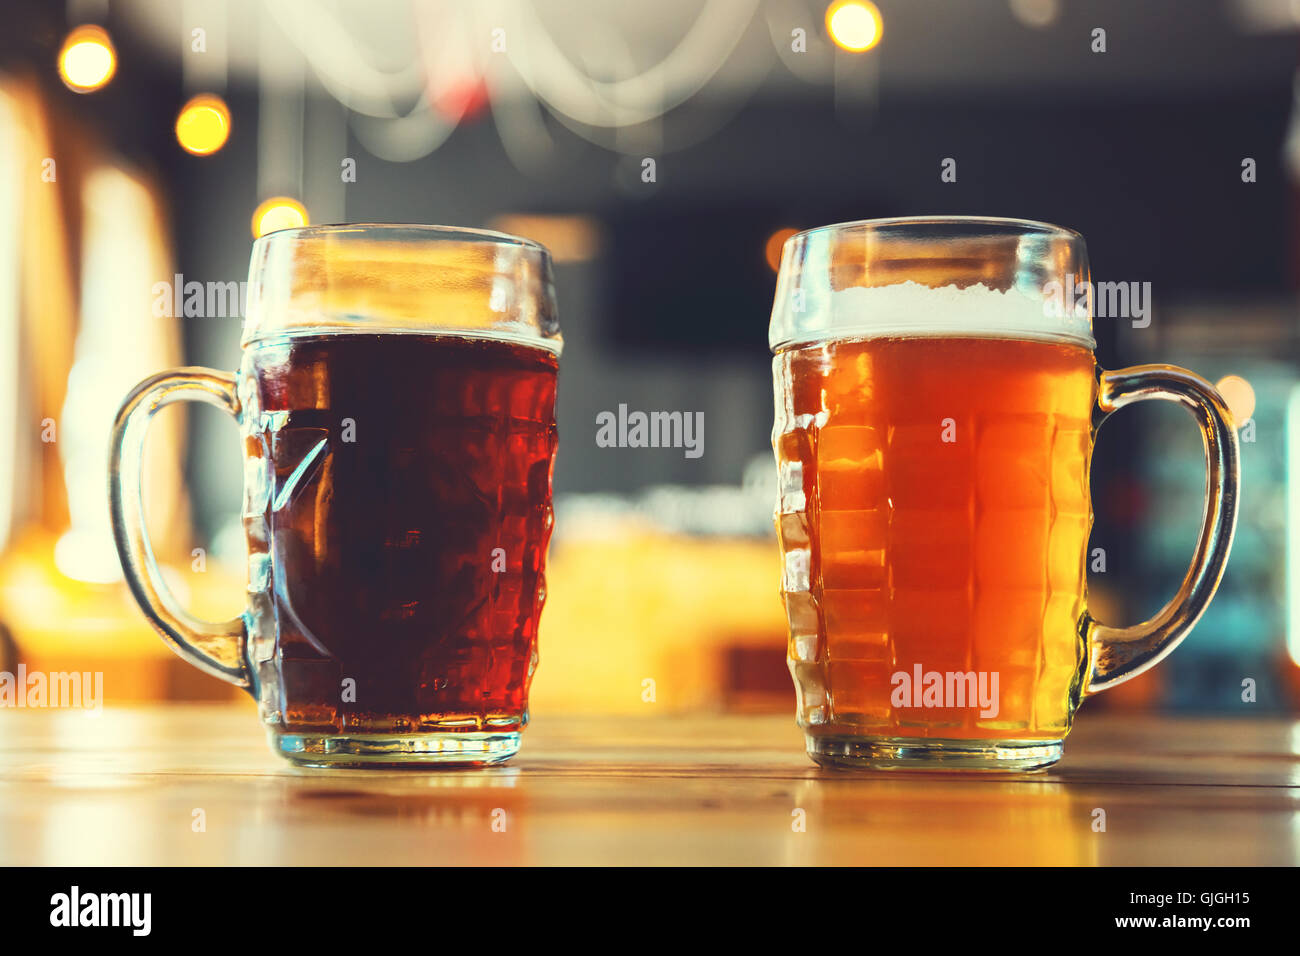 Bicchieri, Pinte e Coppe da Birra per Degustazione - Cantina della Birra